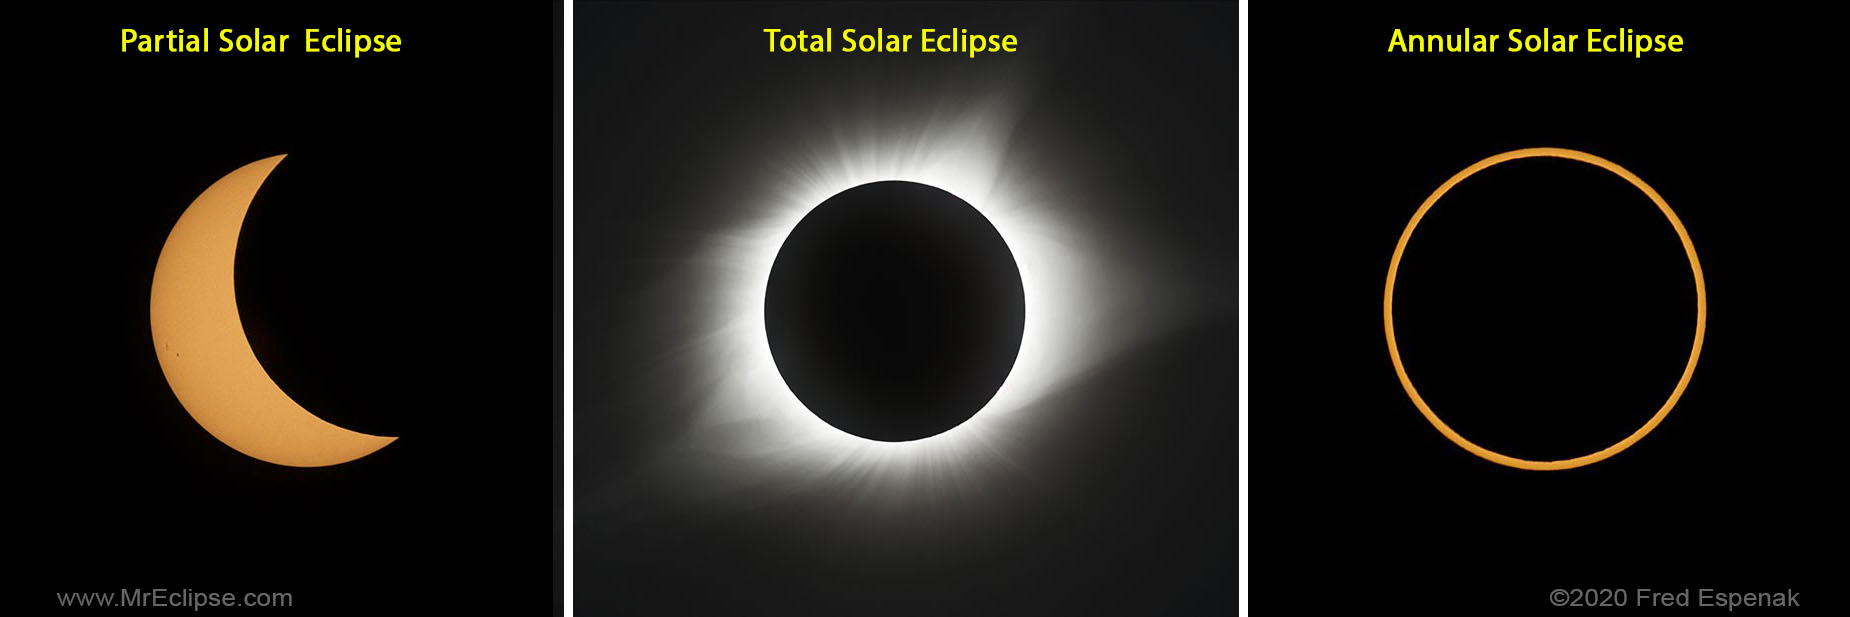 solar eclipse umbra